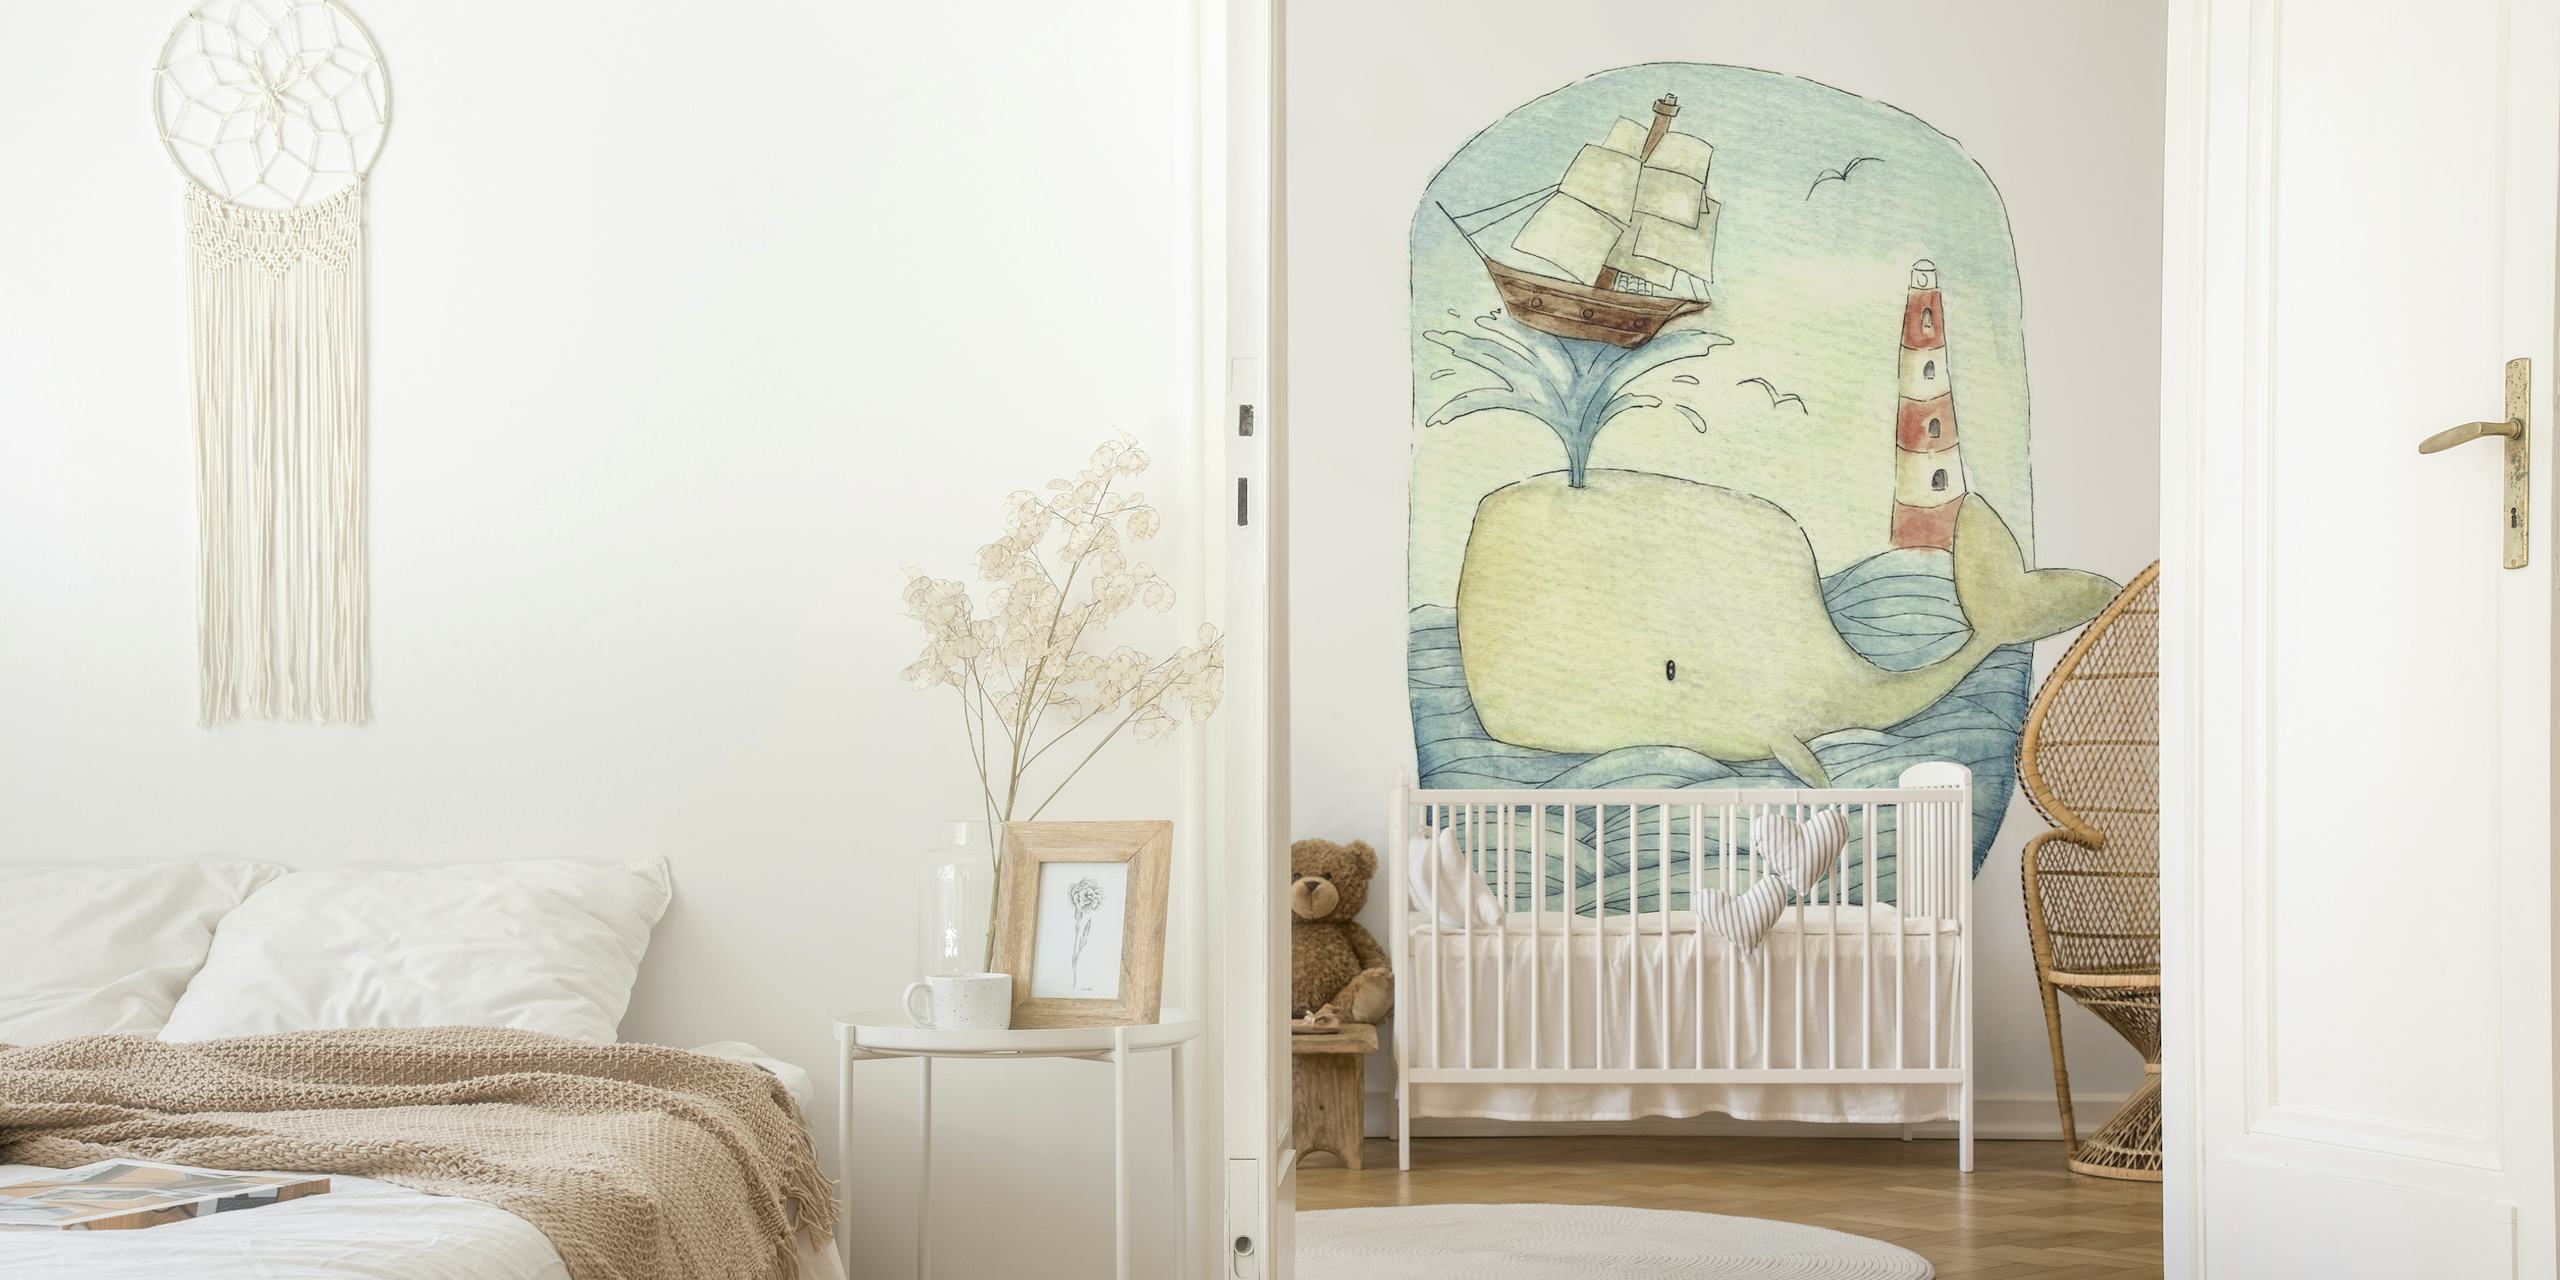 Murale illustrative représentant une jolie baleine avec un voilier et un phare dans un style aquarelle